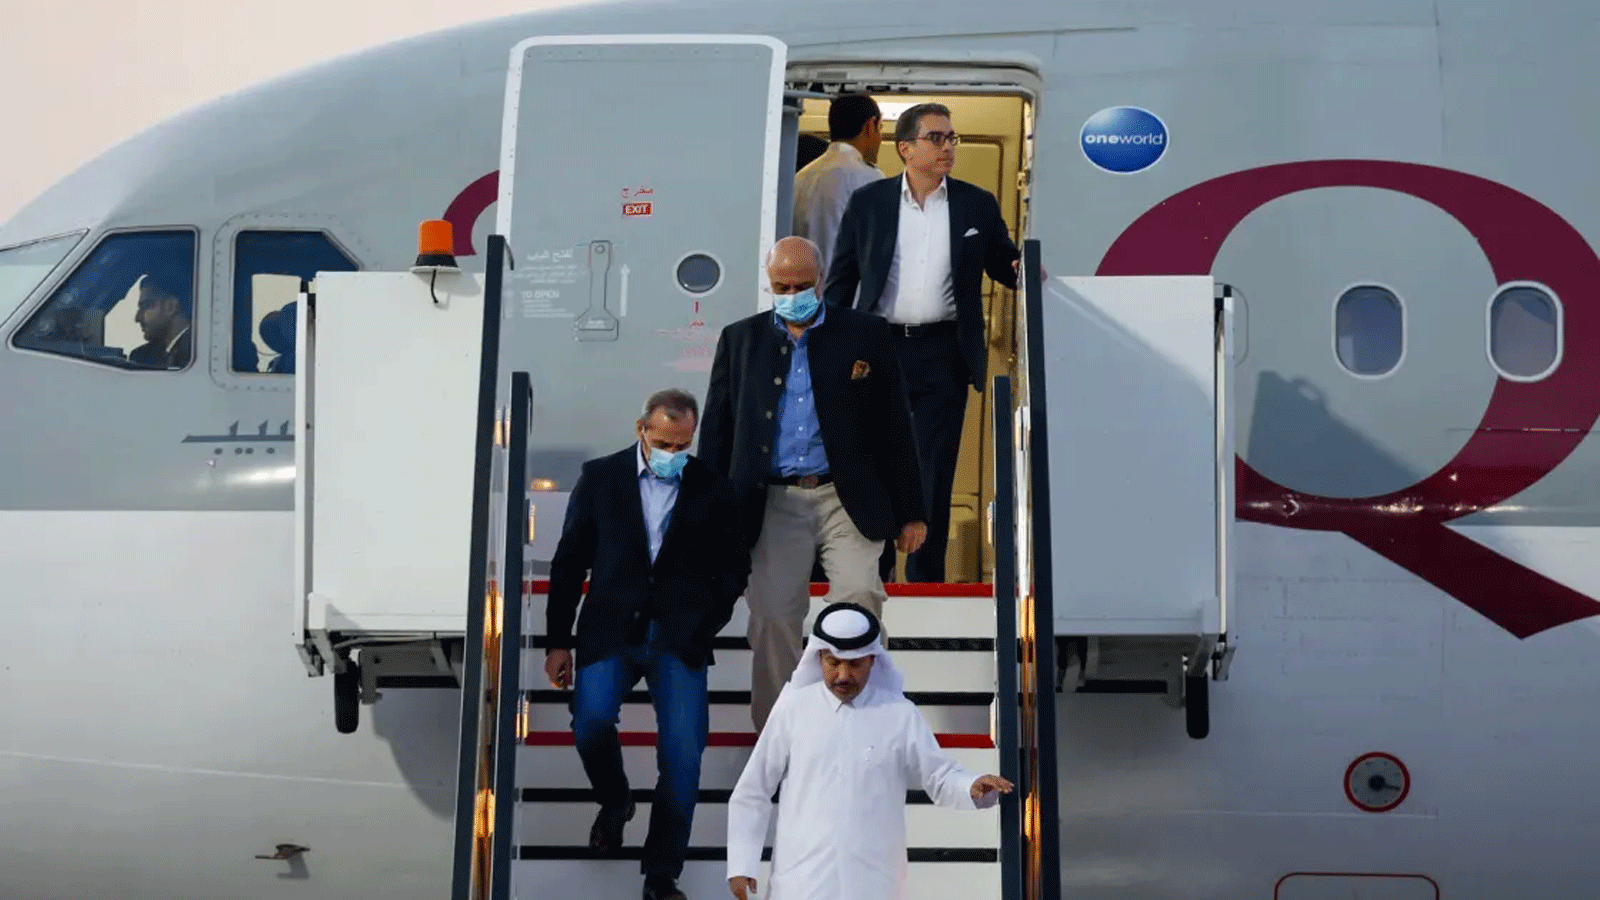 المواطنون الأميركيون من اليسار، عماد شرقي ومراد طهباز وسياماك نمازي، ينزلون من الطائرة القطرية لدى وصولهم إلى مطار الدوحة الدولي